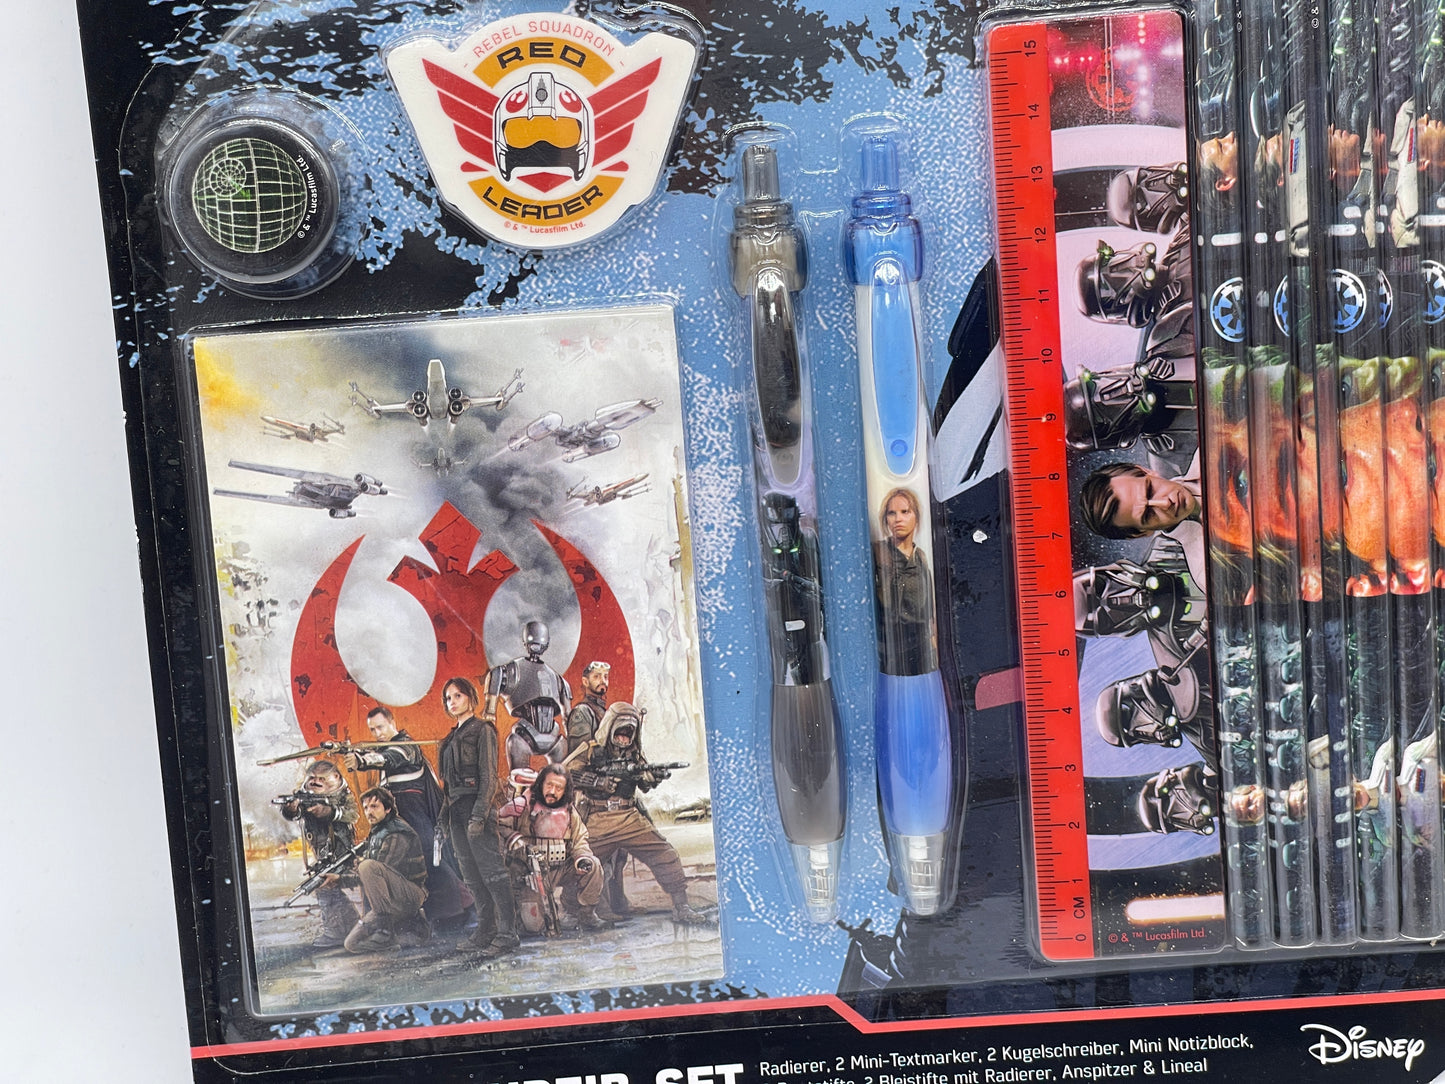 Star Wars Rogue One "XL Super Schreibset Stifte, Lineal, Radierer etc" (Disney)